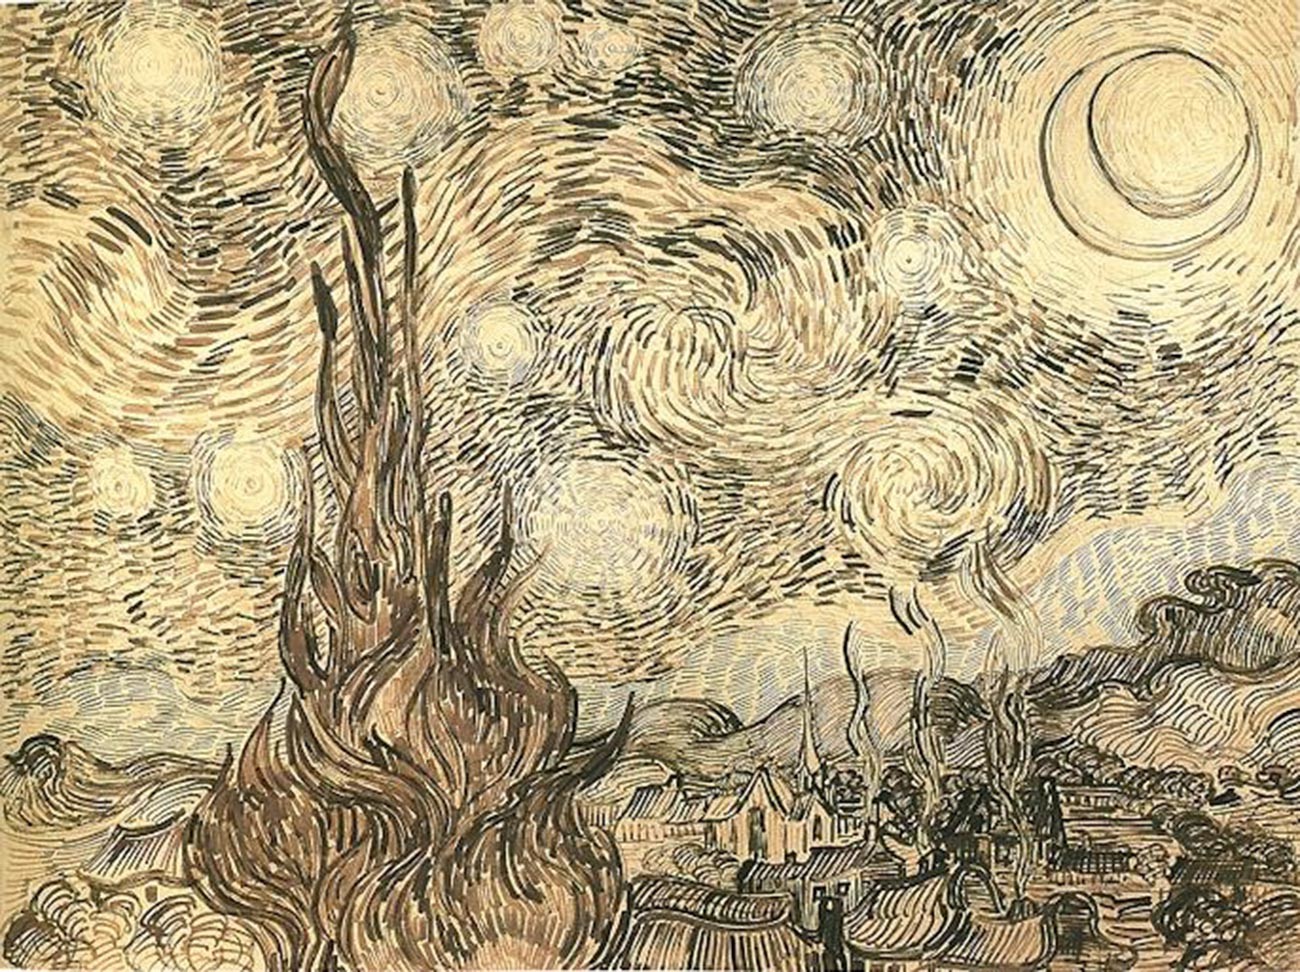 Die Sternennacht von Vincent van Gogh (Zeichnung)